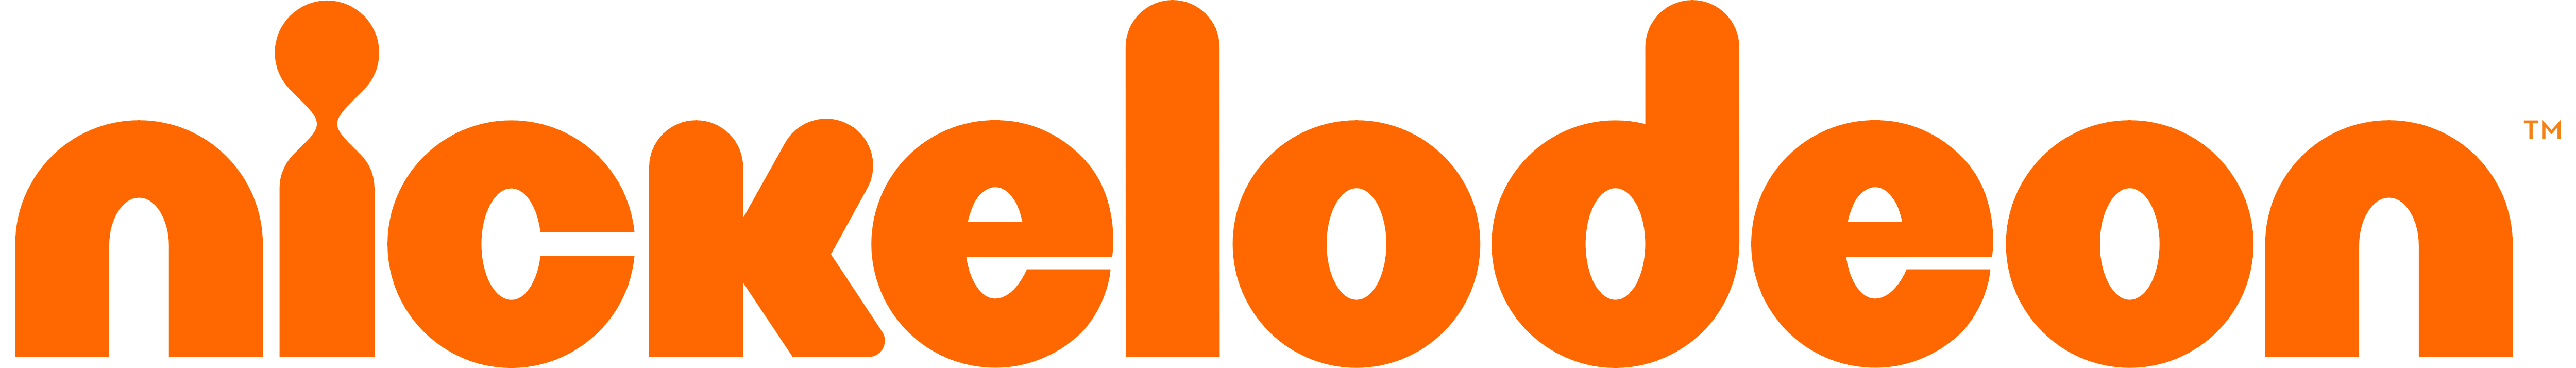 Orange Nickelodeon Logo - Nickelodeon Logo Png Transparent PNG Logos